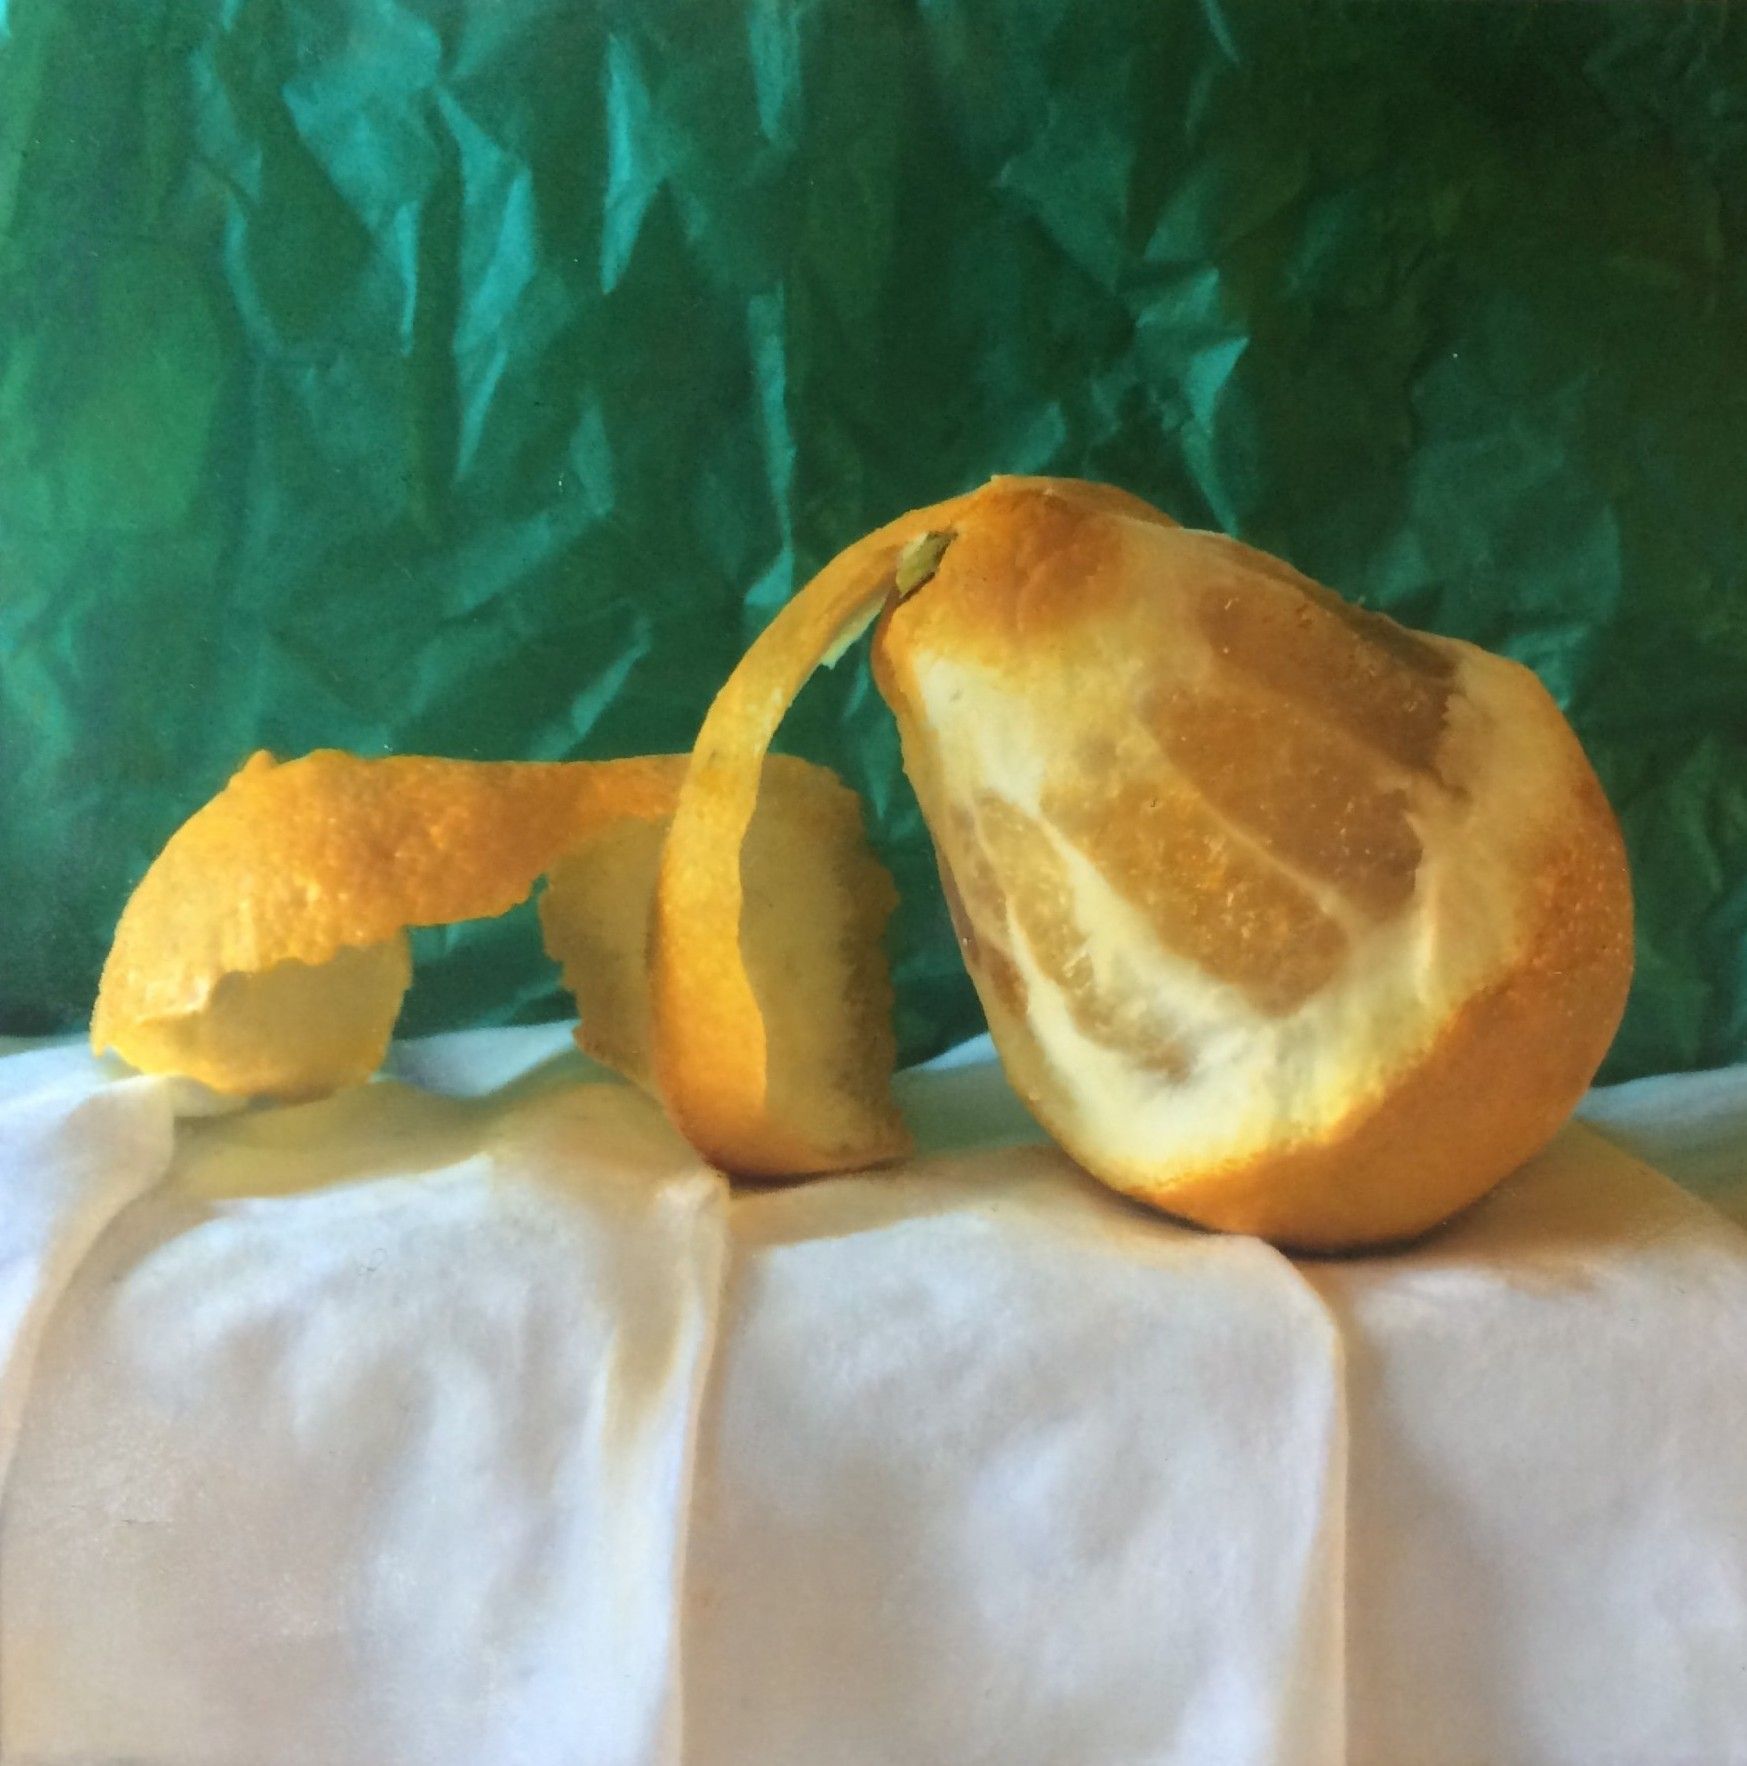 Lemon by Kate Verrion